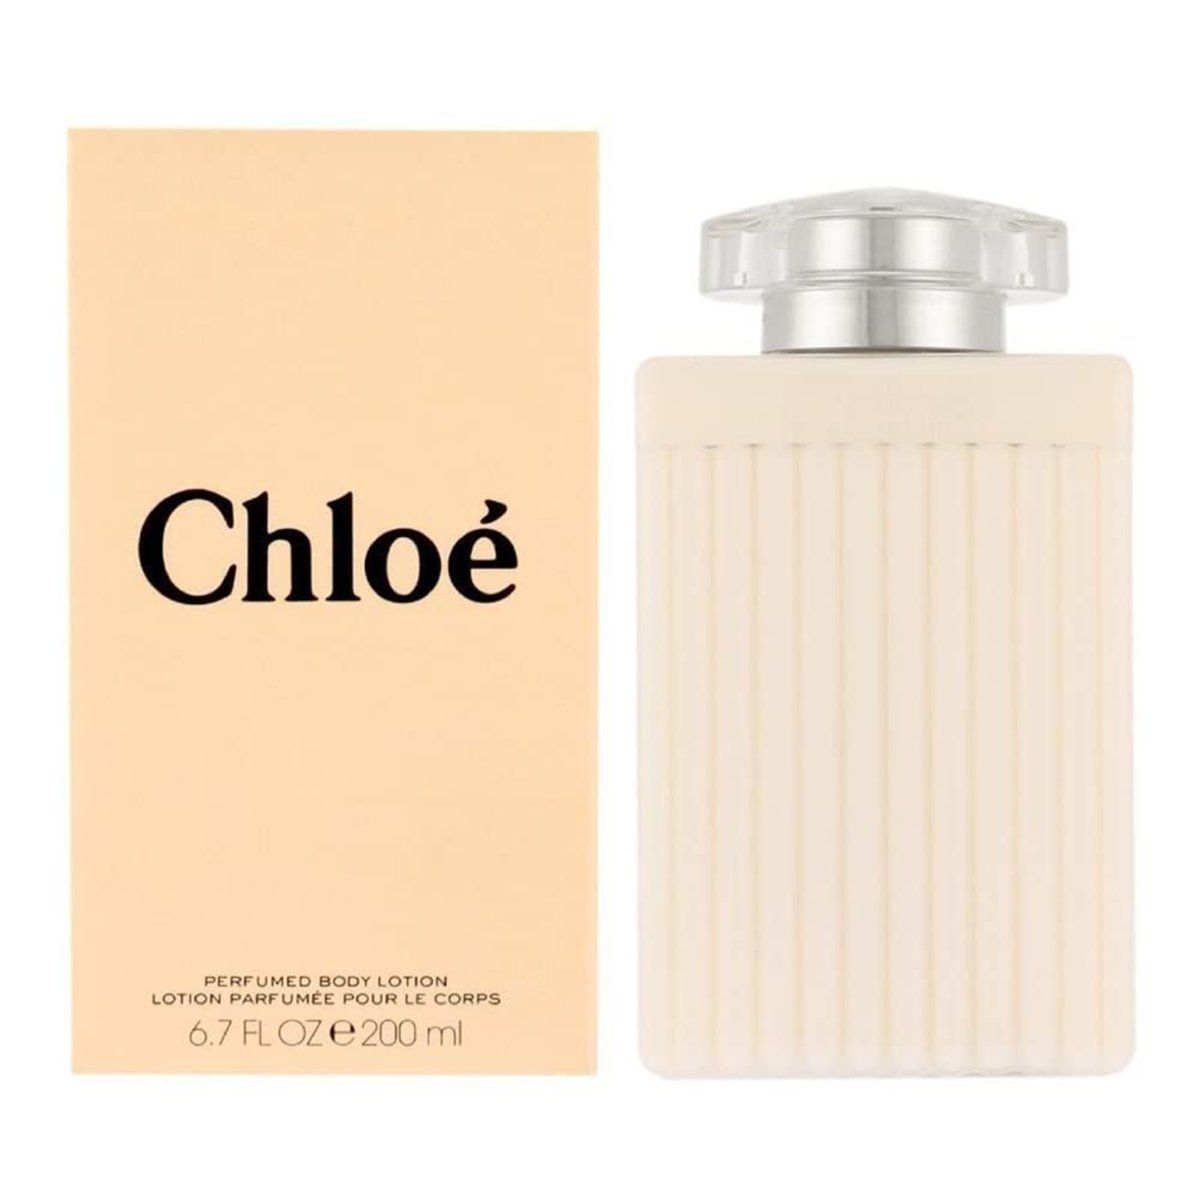  Chloe Eau de Parfum Body Lotion 